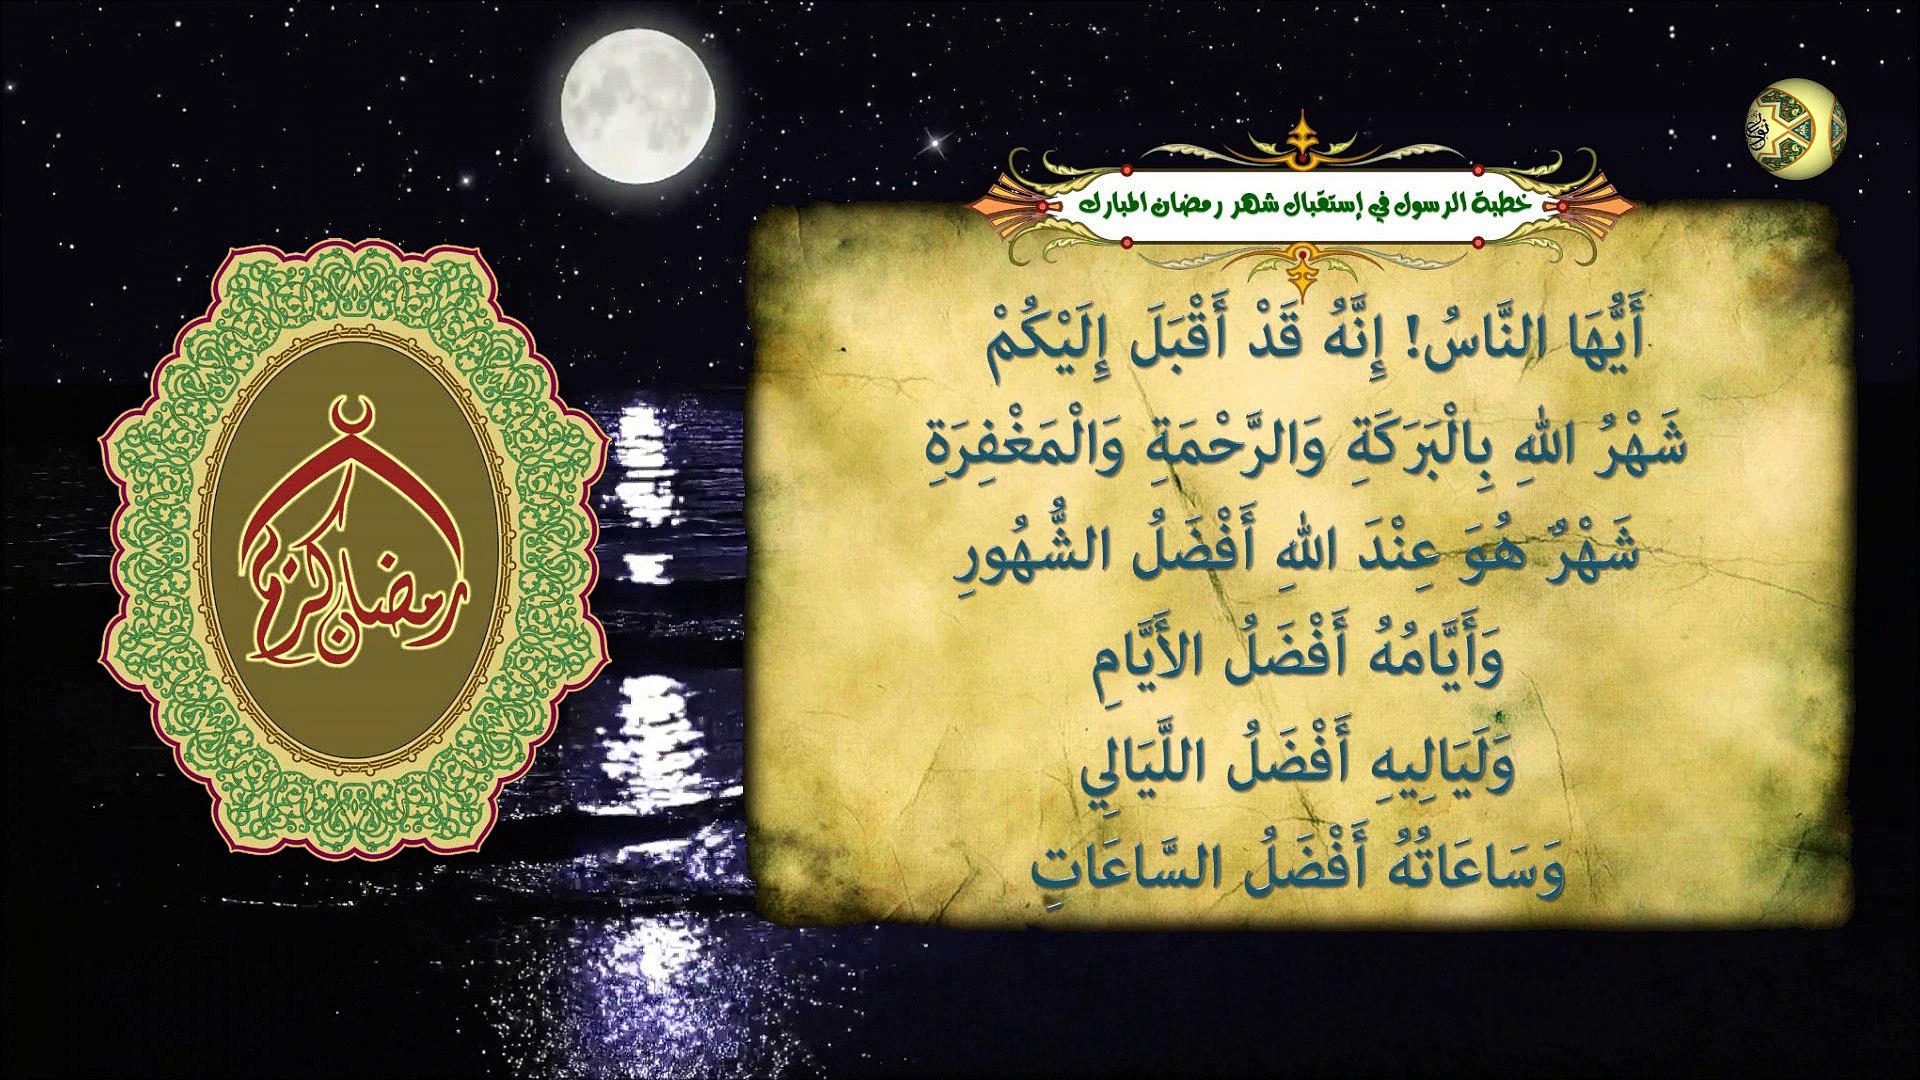 خطبة الرسول صل ى الله عليه وآله في استقبال شهر رمضان المبارك فيديو Dailymotion